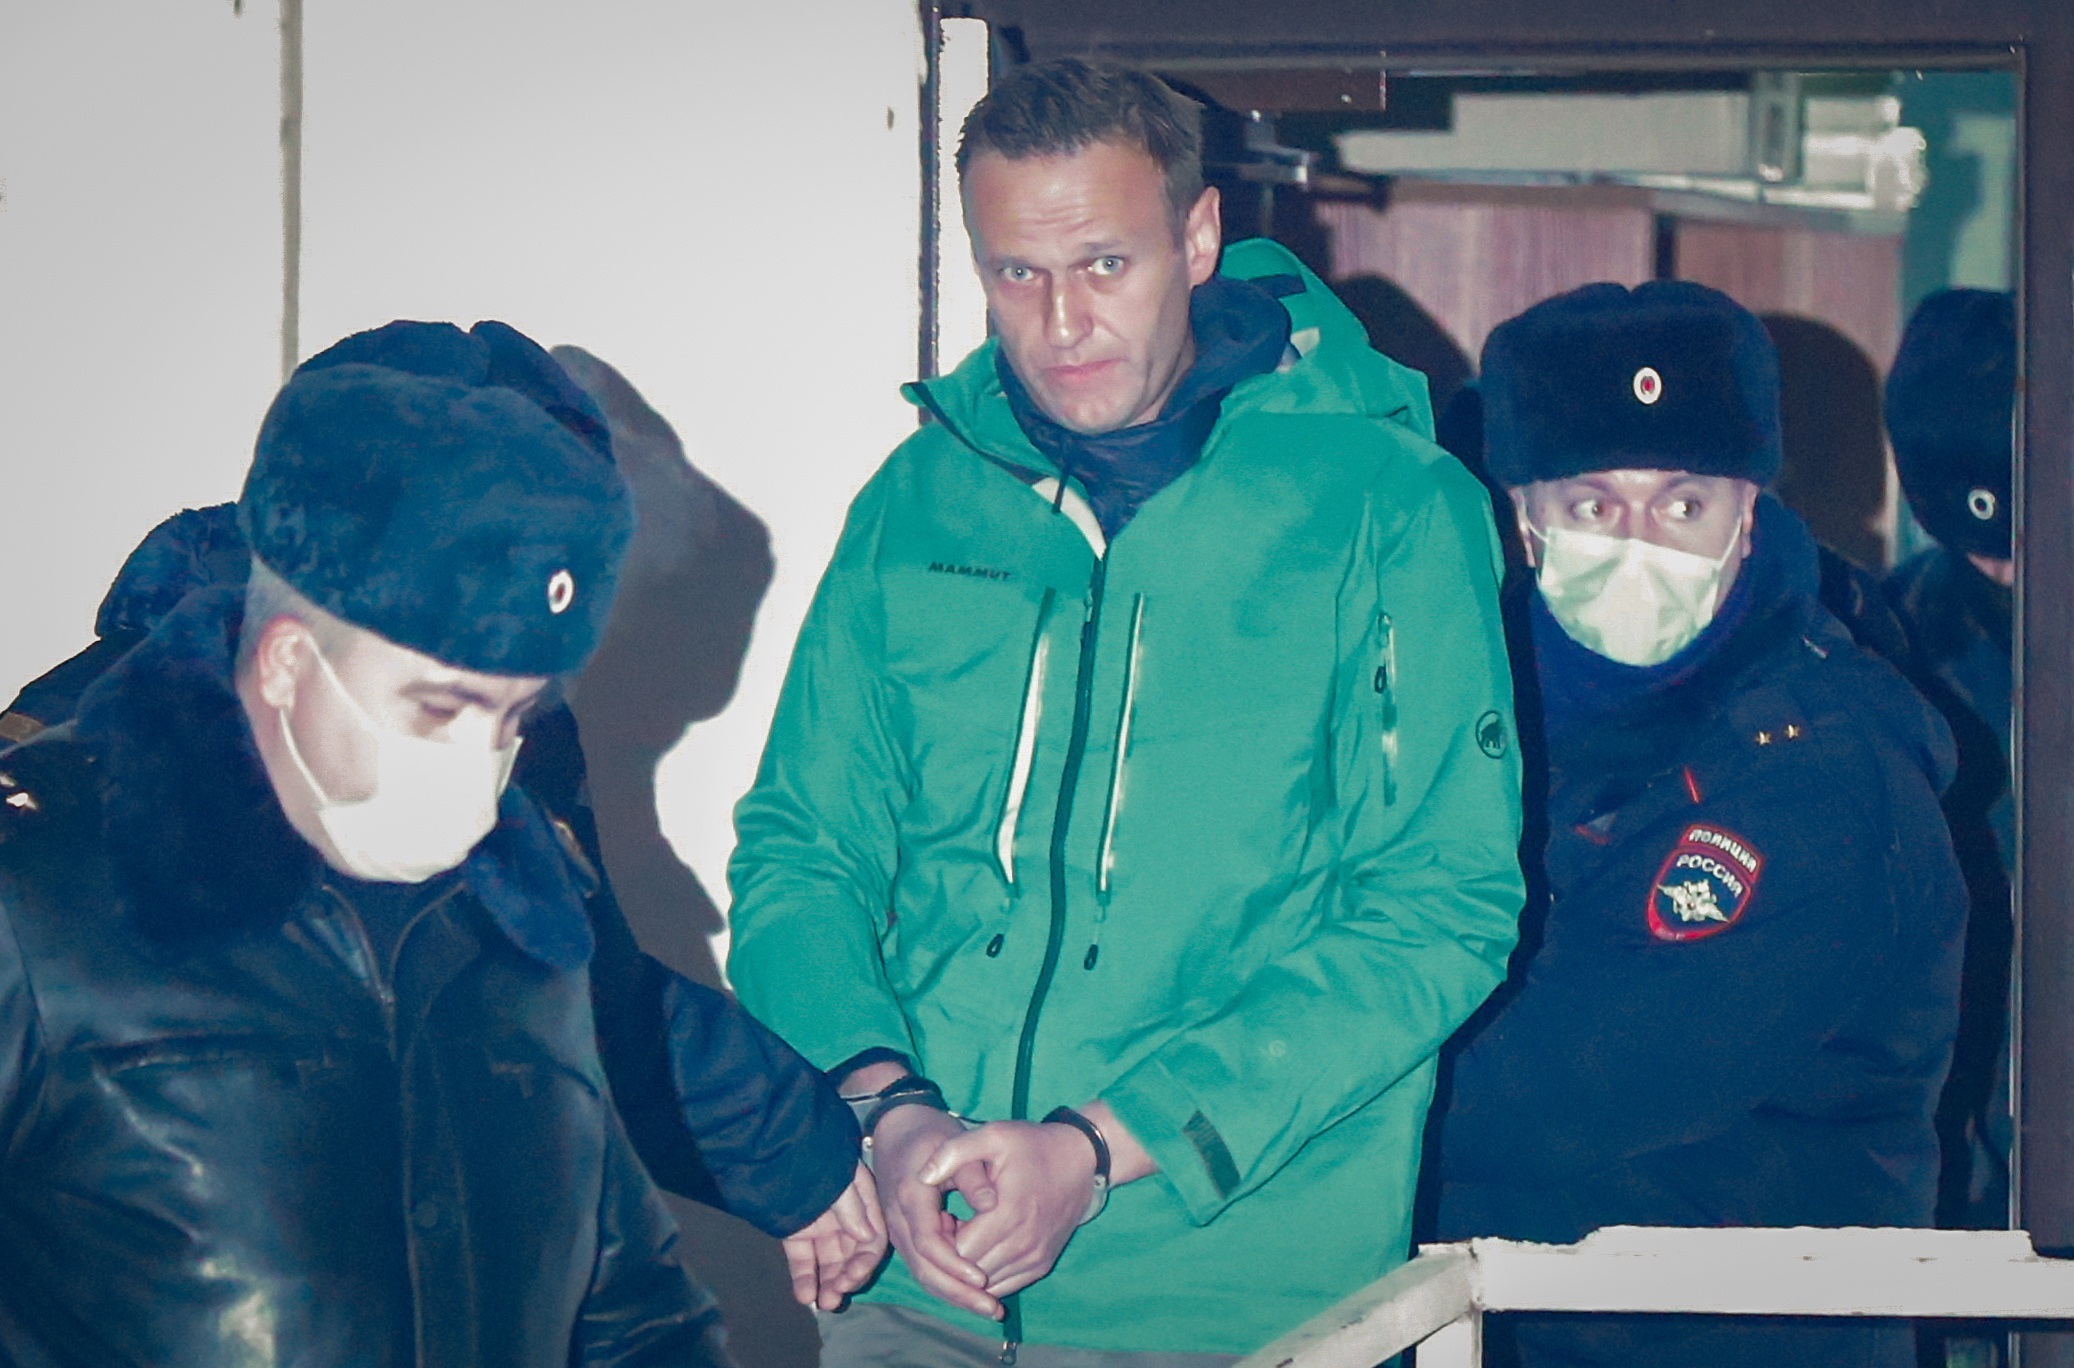 El opositor ruso Alexéi Navalni sale esposado de una comisaría en las afueras de Moscú rumbo a una cárcel de alta seguridad. EFE/ Sergei Ilnitsky
